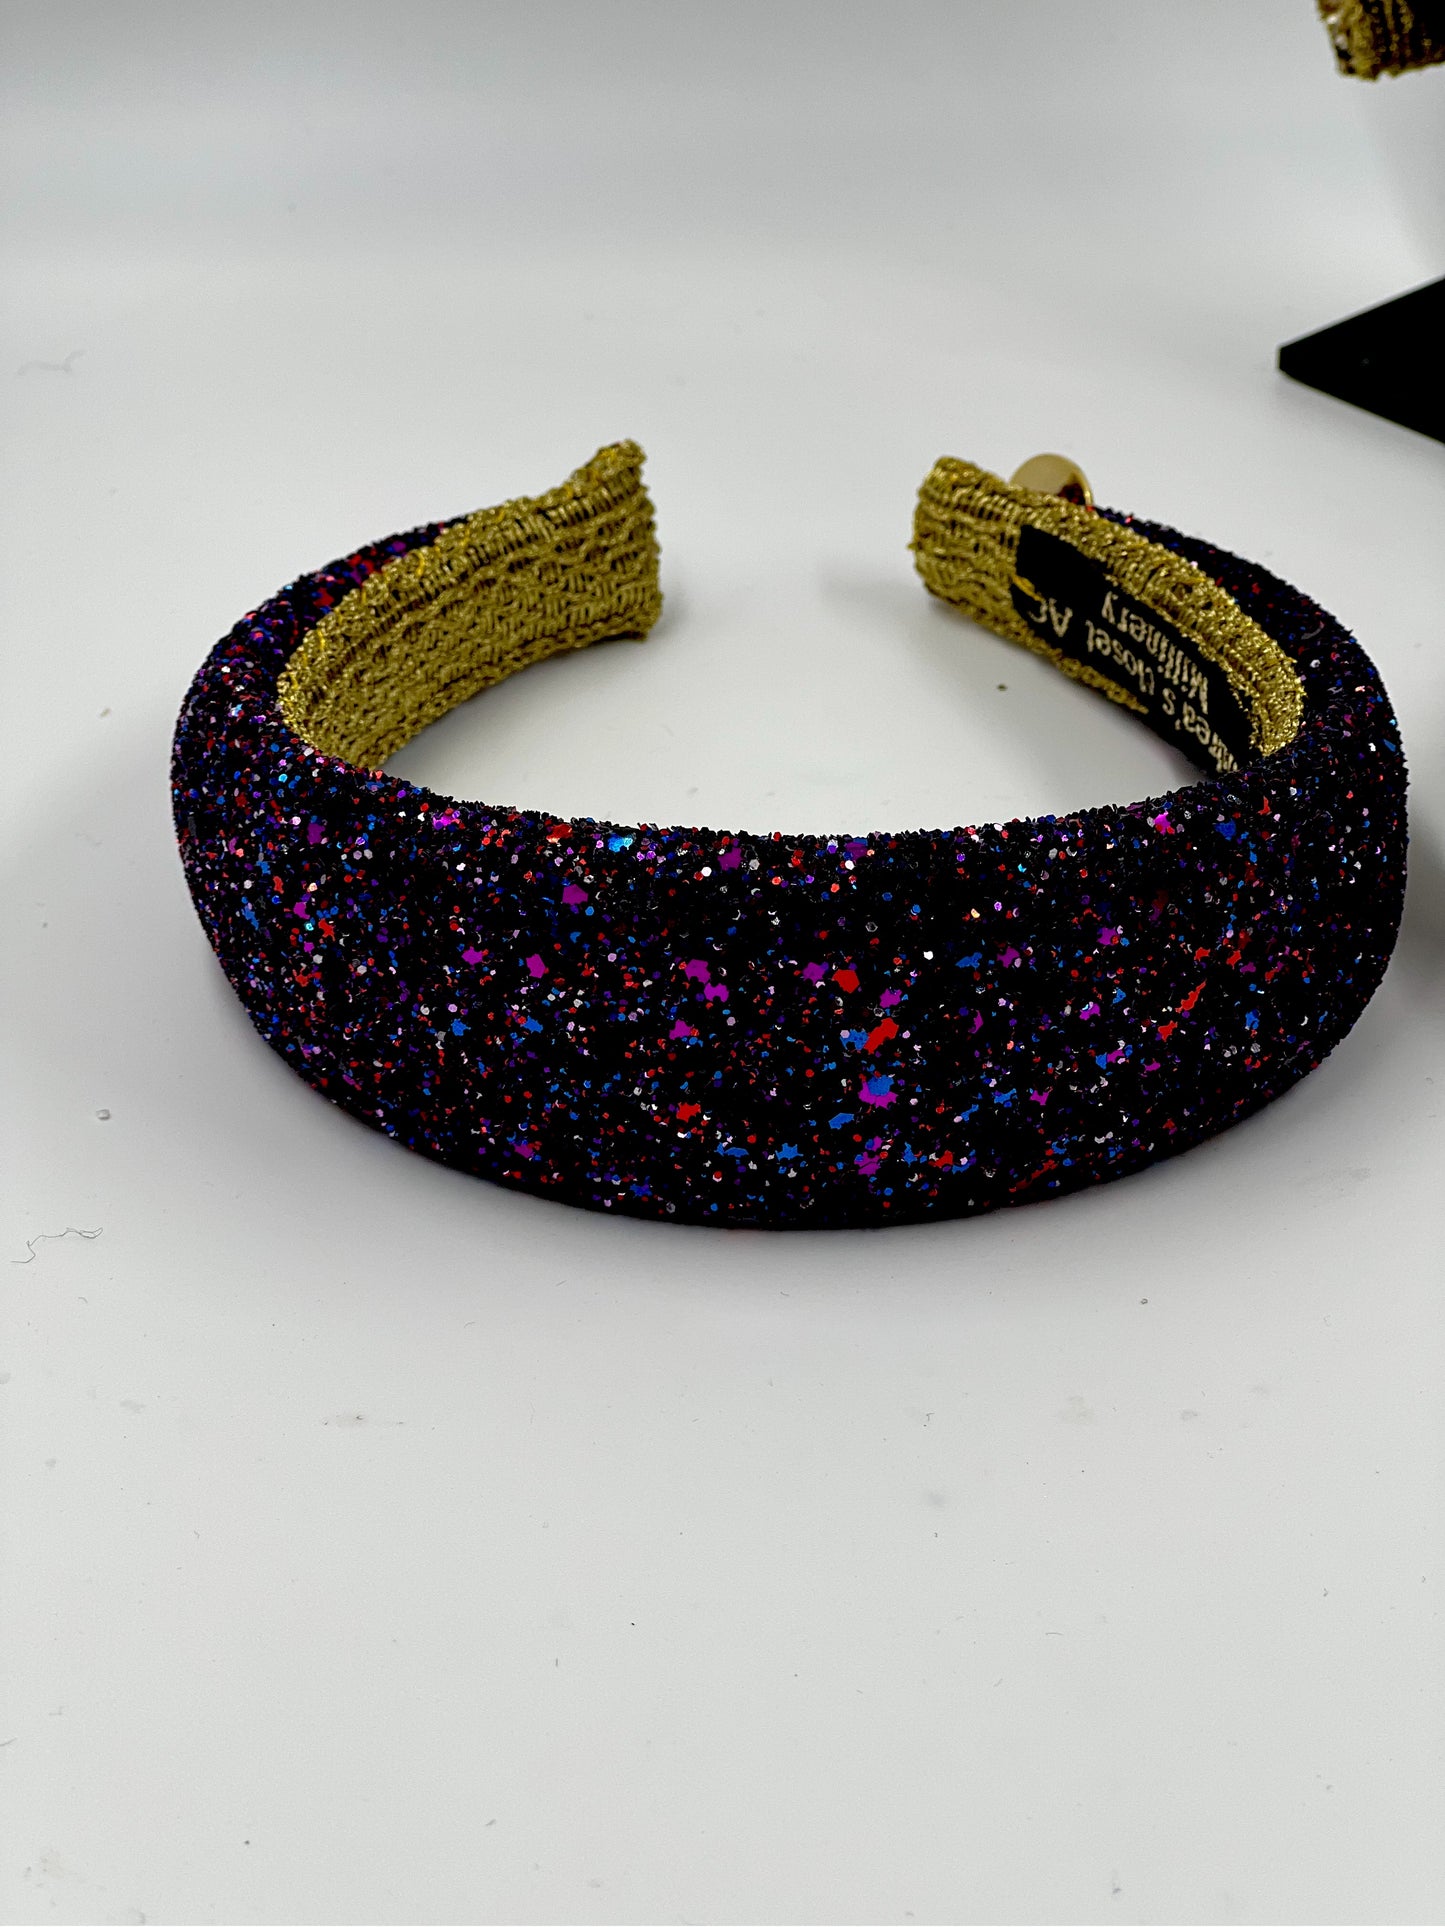 D-Glitter headband